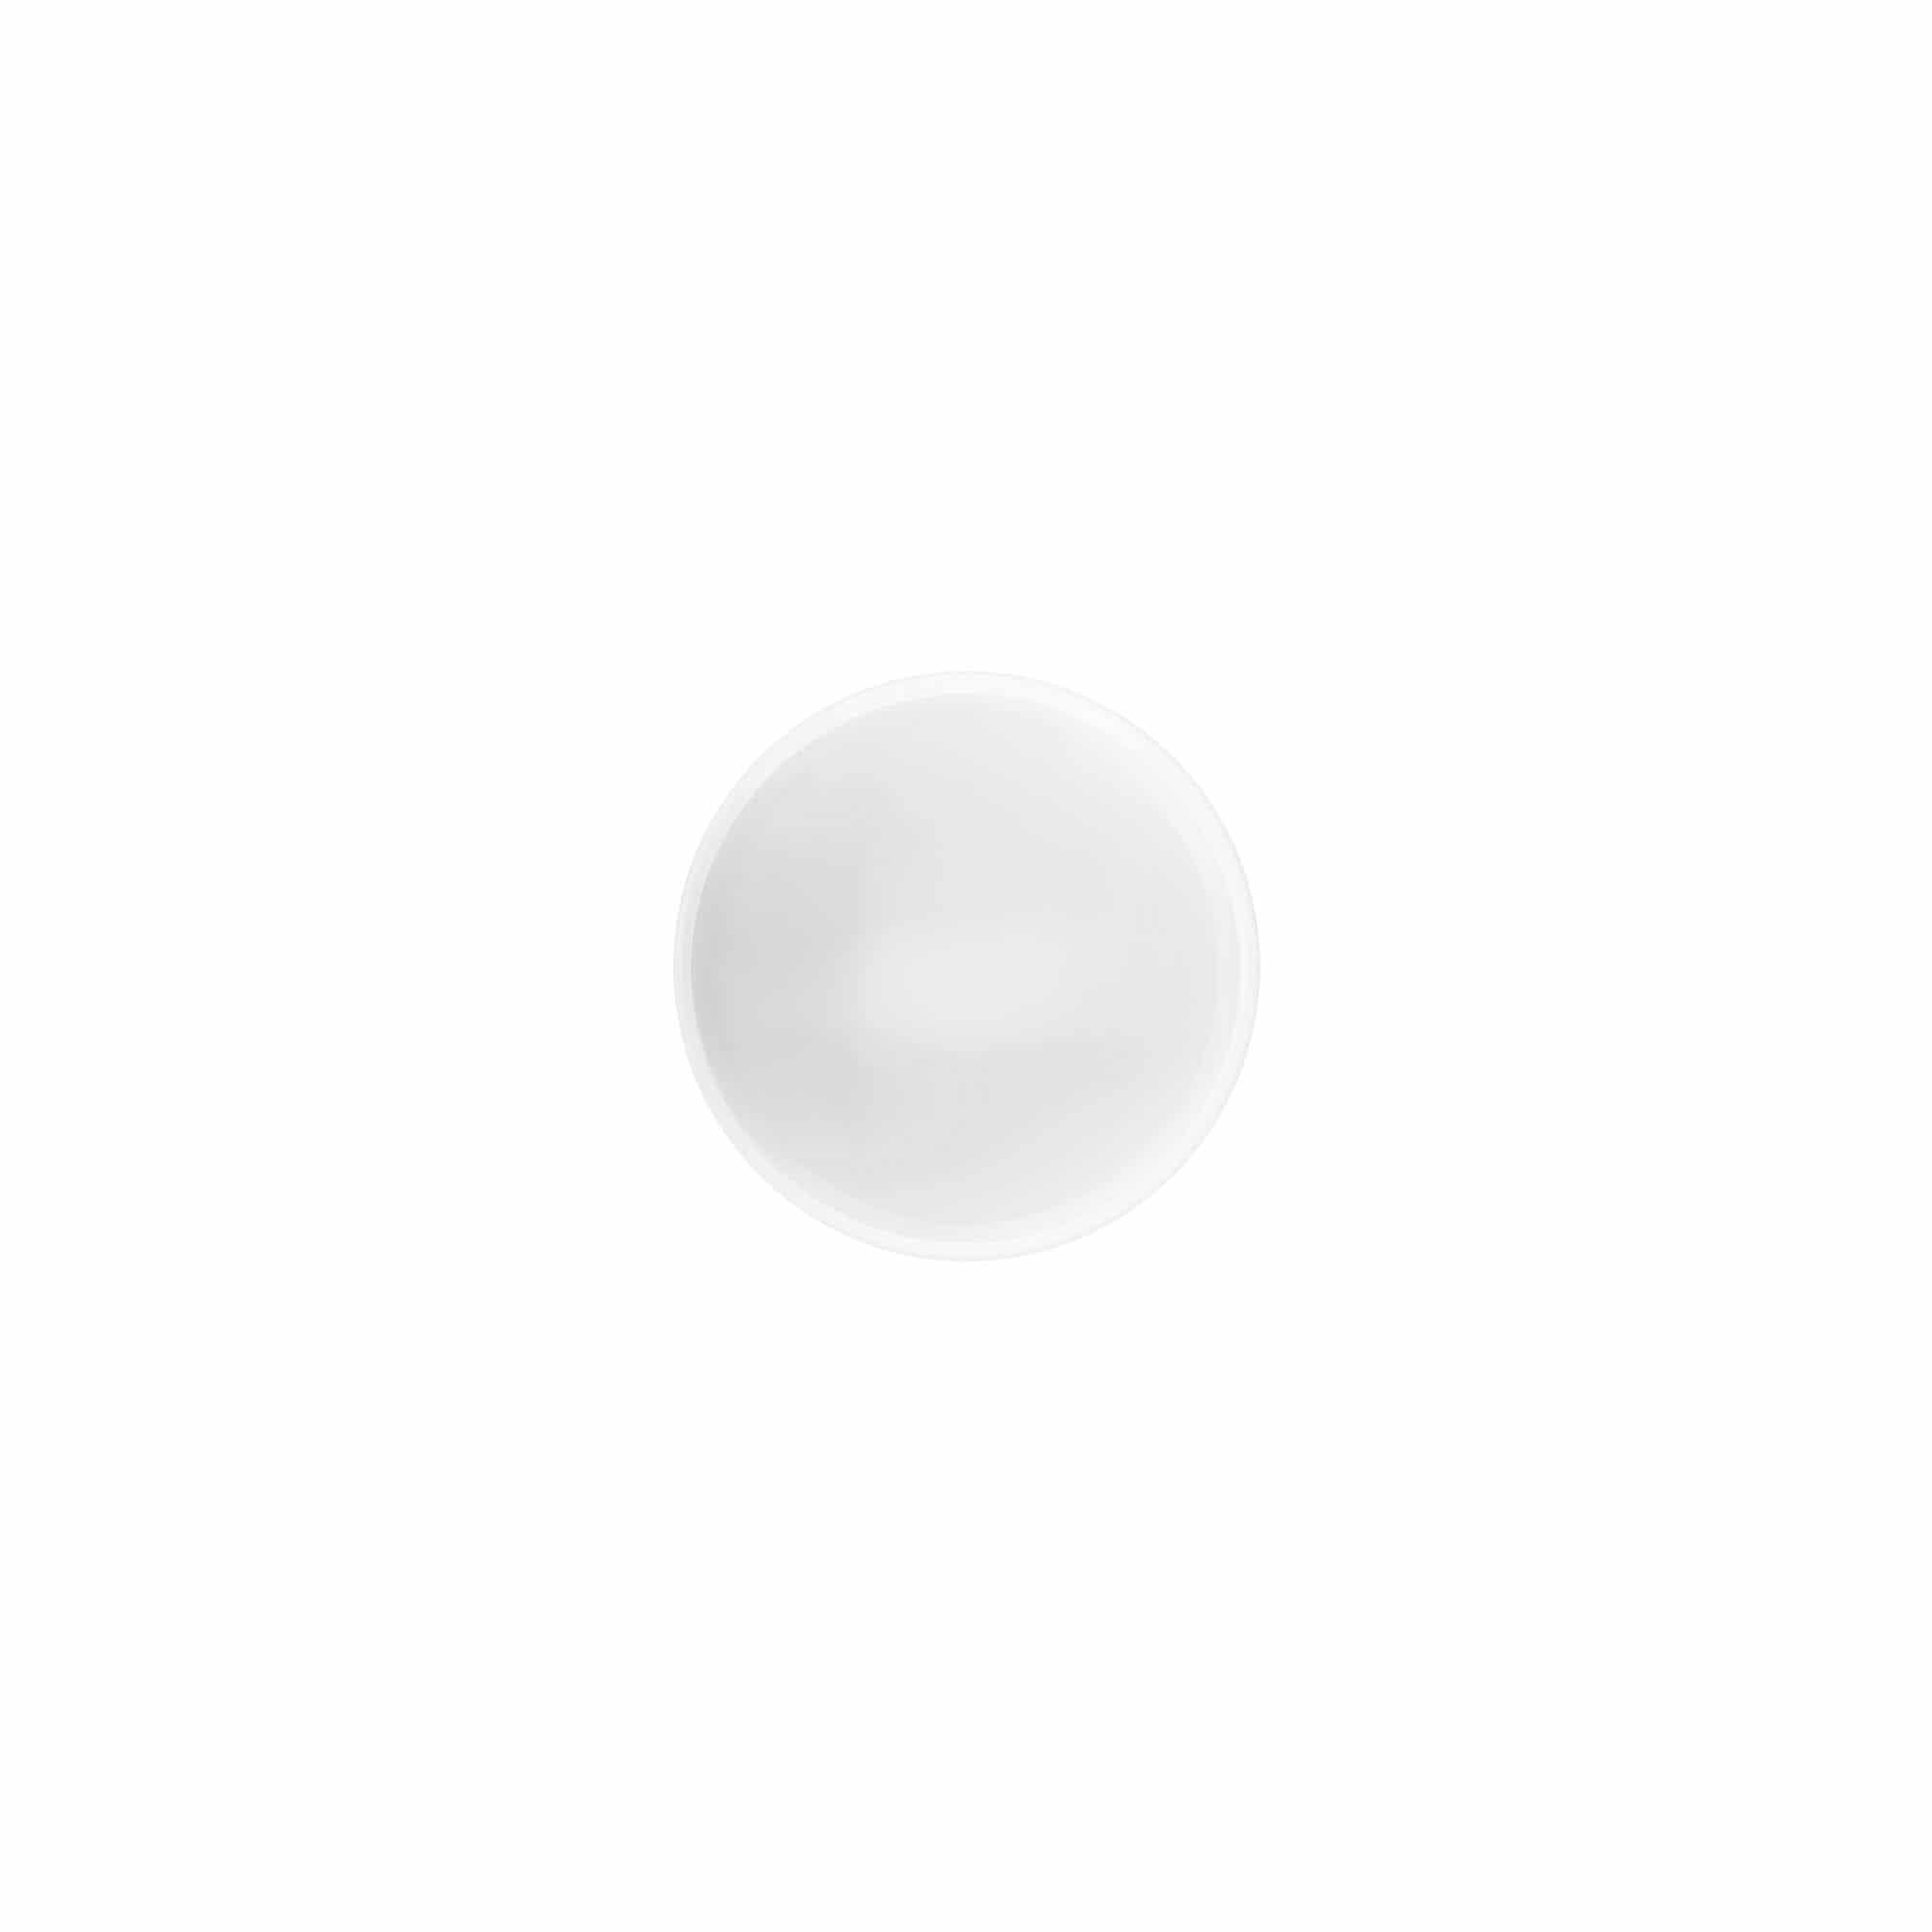 Zakrętka 'White Line' 35 ml, tworzywo sztuczne PP, kolor biały